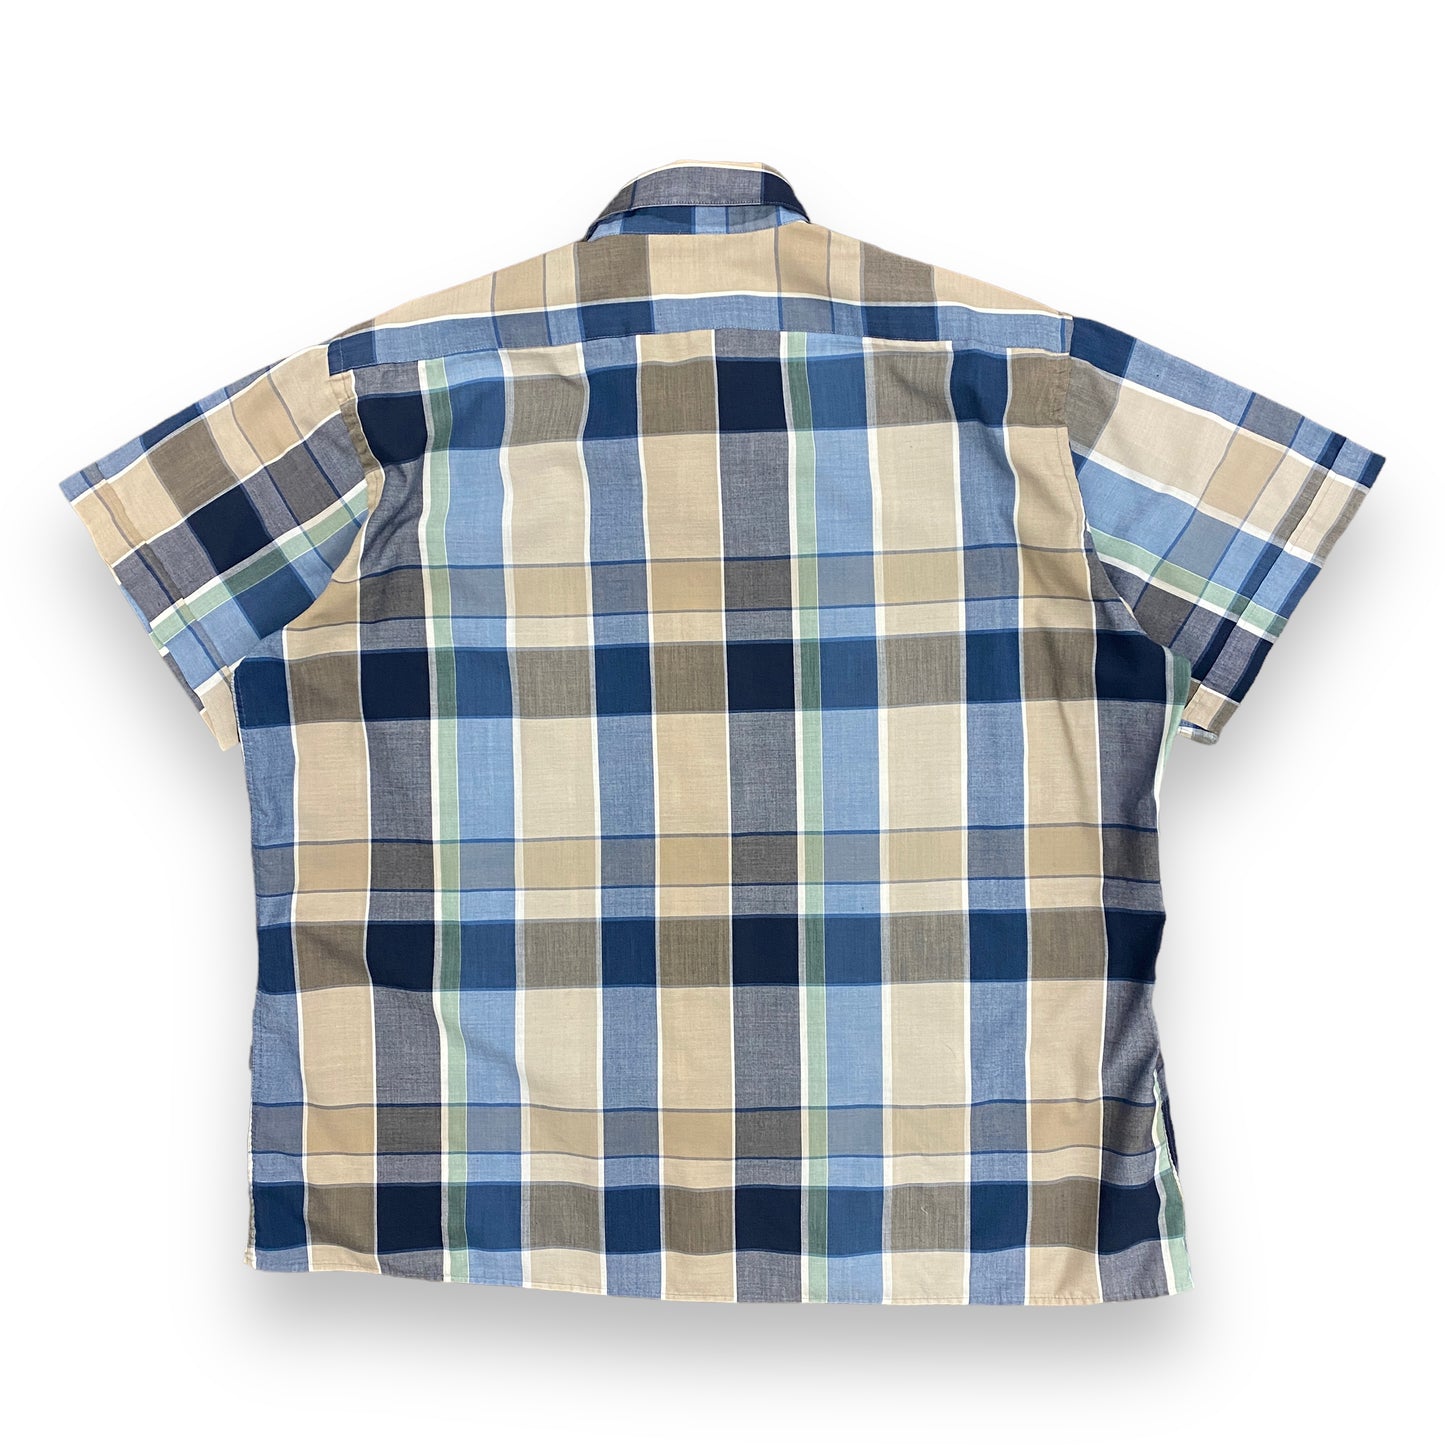 Pierre Cardin Blue Plaid Shirt - Size XL